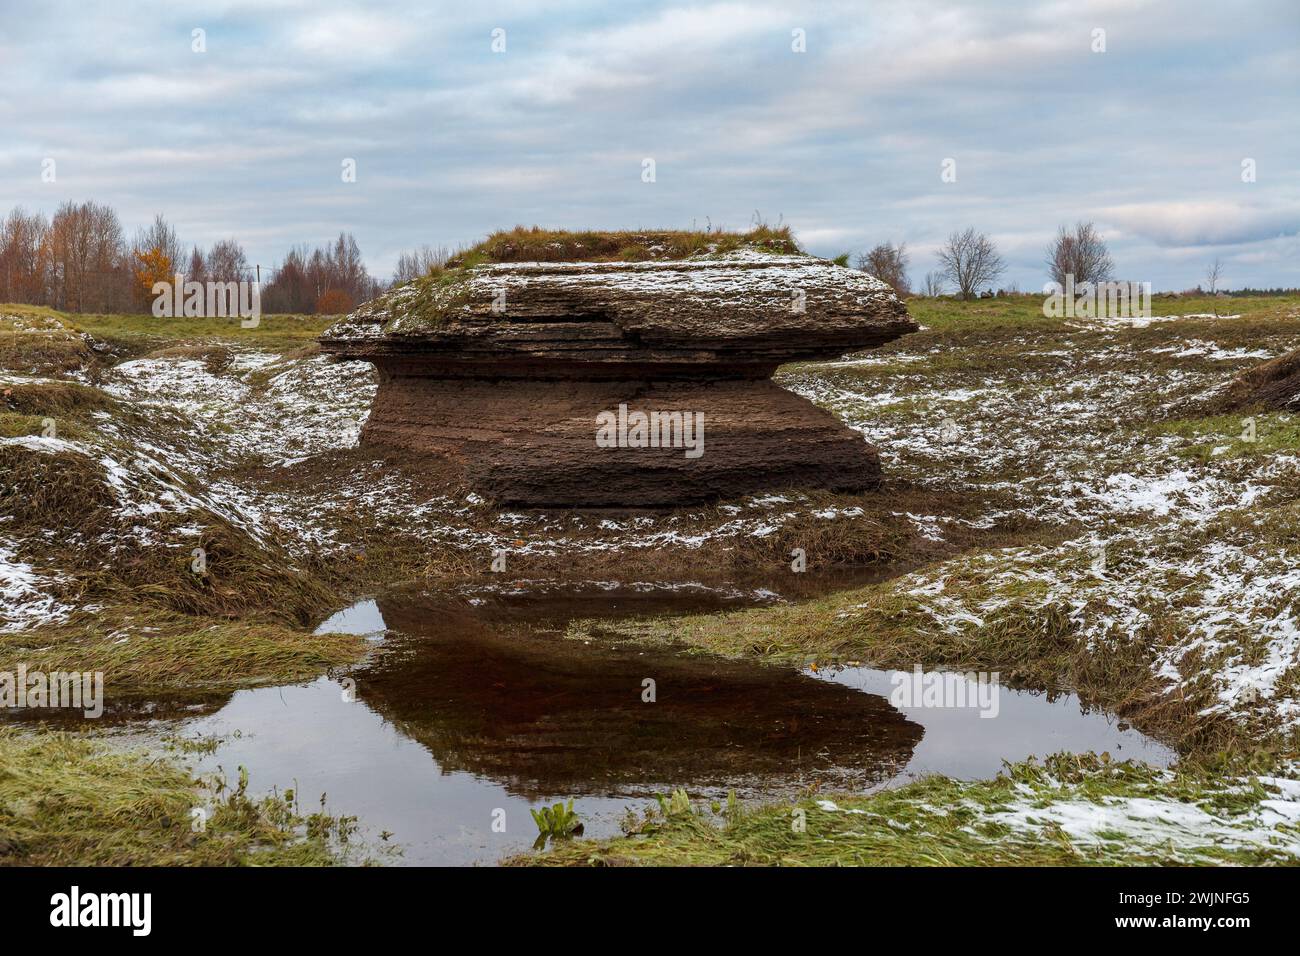 Affioramenti rocciosi (carsici) e colline a Kostivere contro il cielo nuvoloso, inizio inverno, gelo su pietre. Estonia. Foto Stock